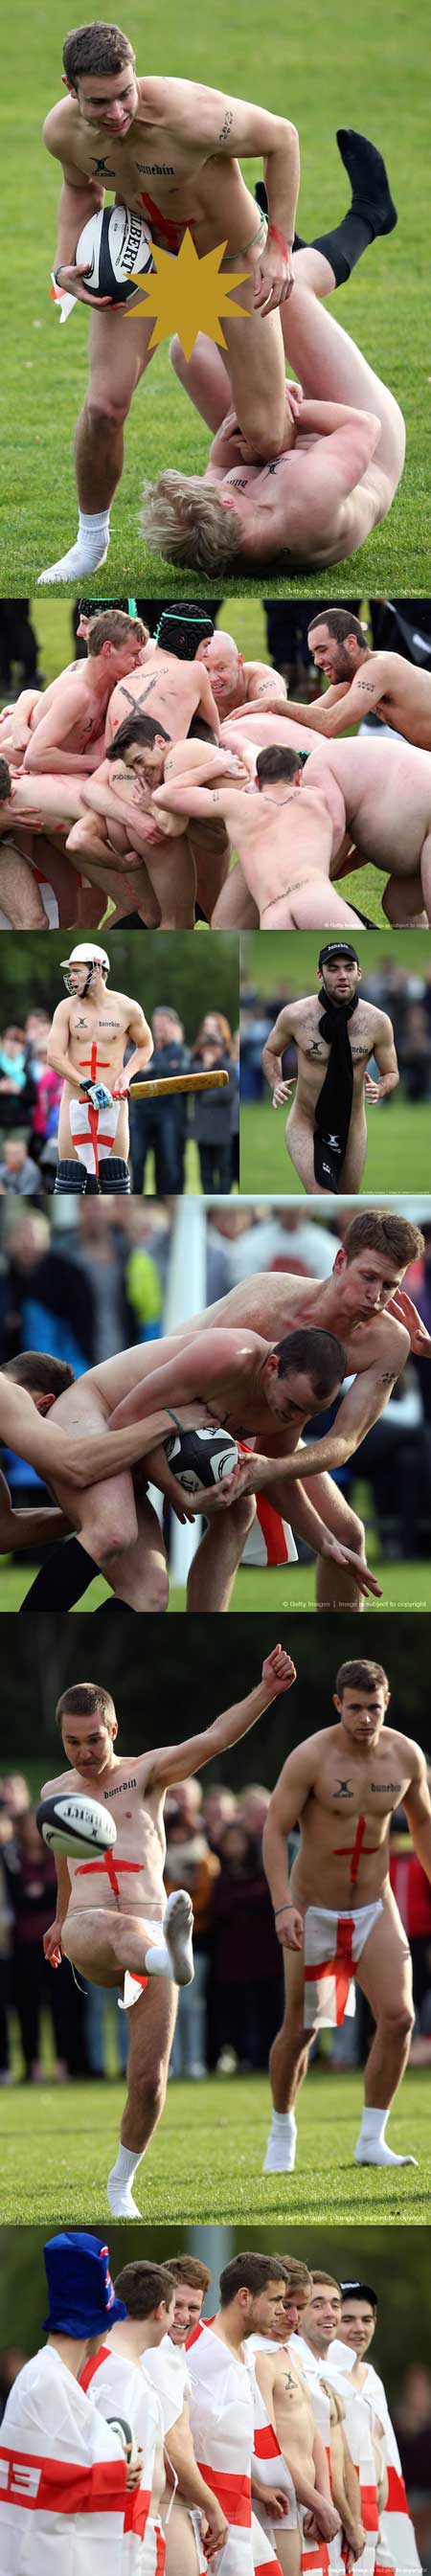 Un partido de rugby nudista